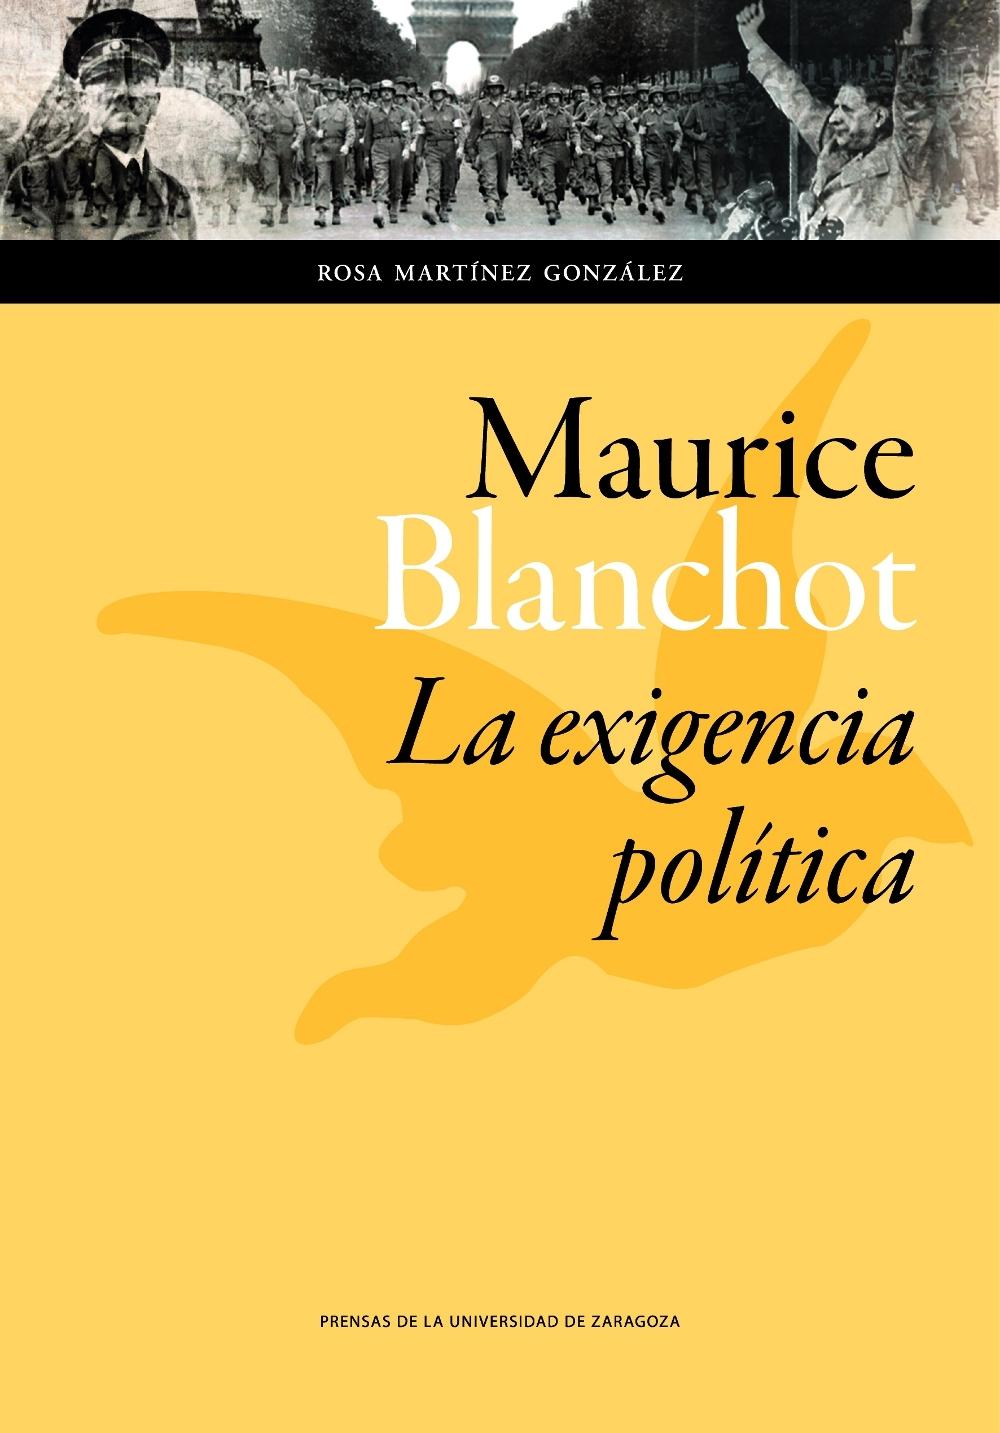 Maurice Blanchot: "La Exigencia Política"